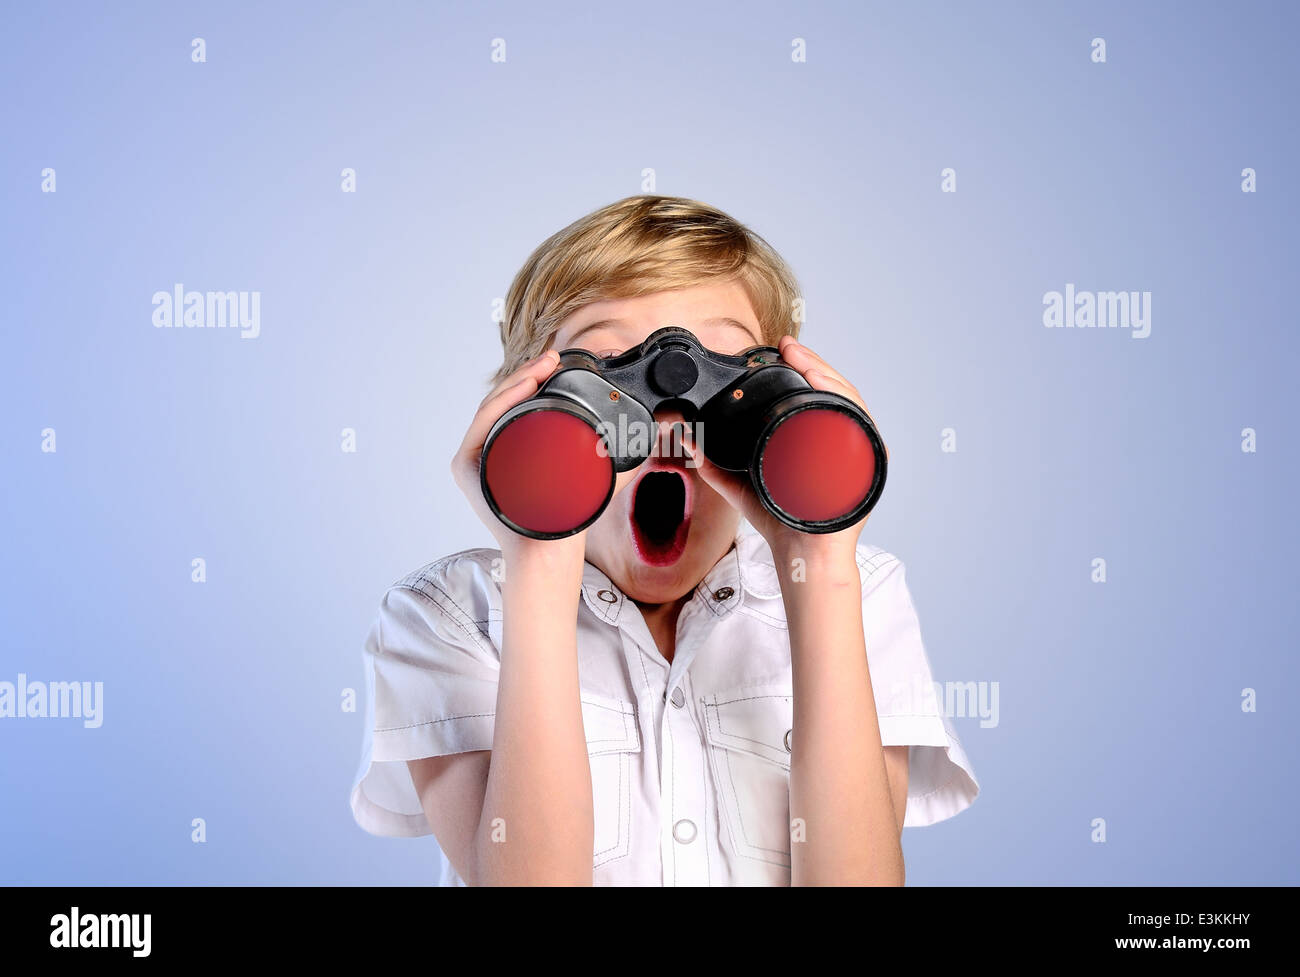 Aventura brazos asombrada aspiraciones antecedentes boy binoculares alegre niño infancia ingeniosa curioso descubrimiento educati cute aturdido Foto de stock